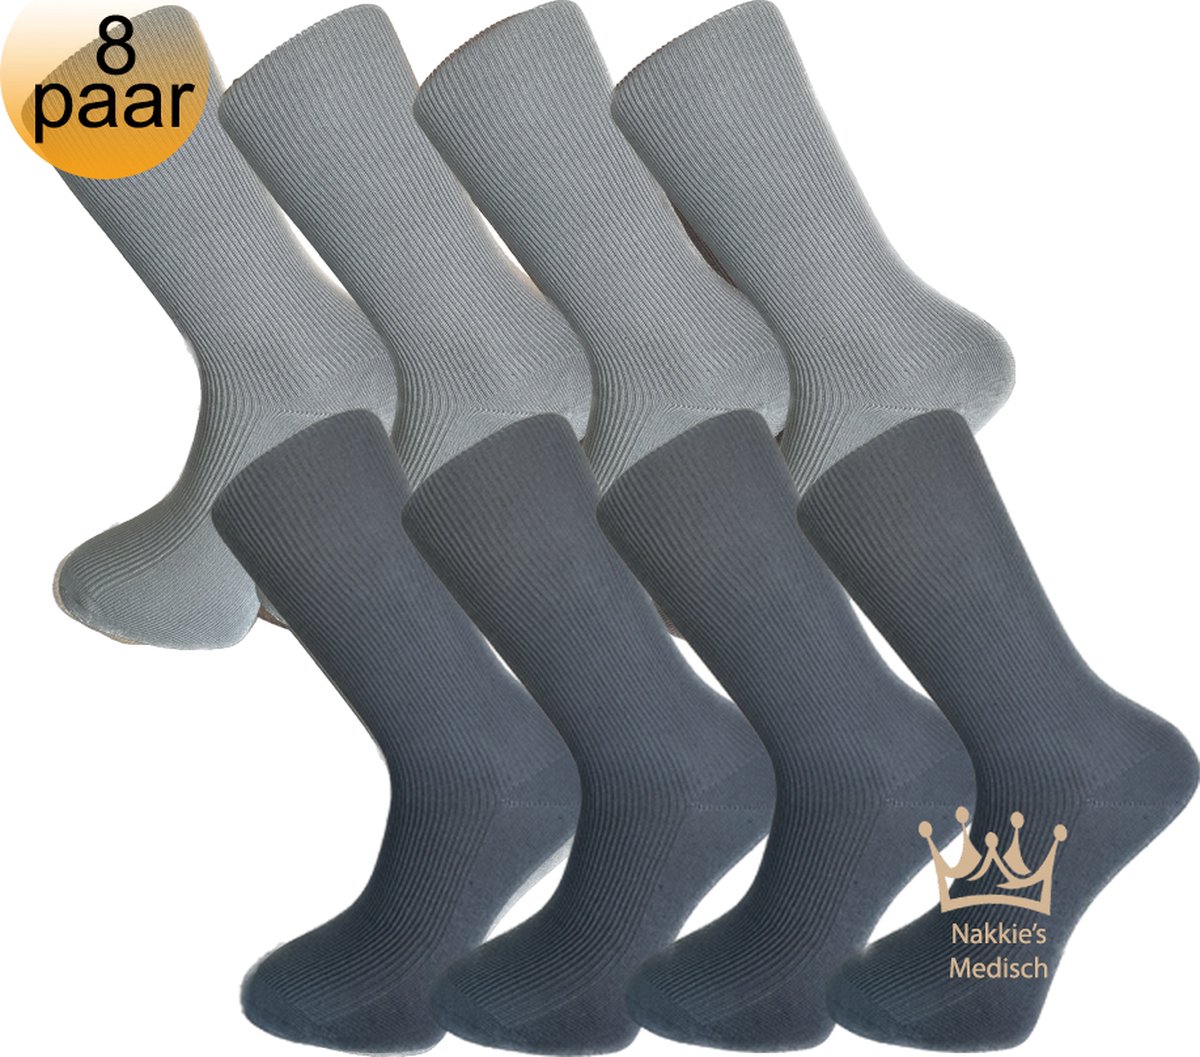 Medische sokken - 100% katoen - 8 paar - Maat 39/42 - Grijs en Antraciet